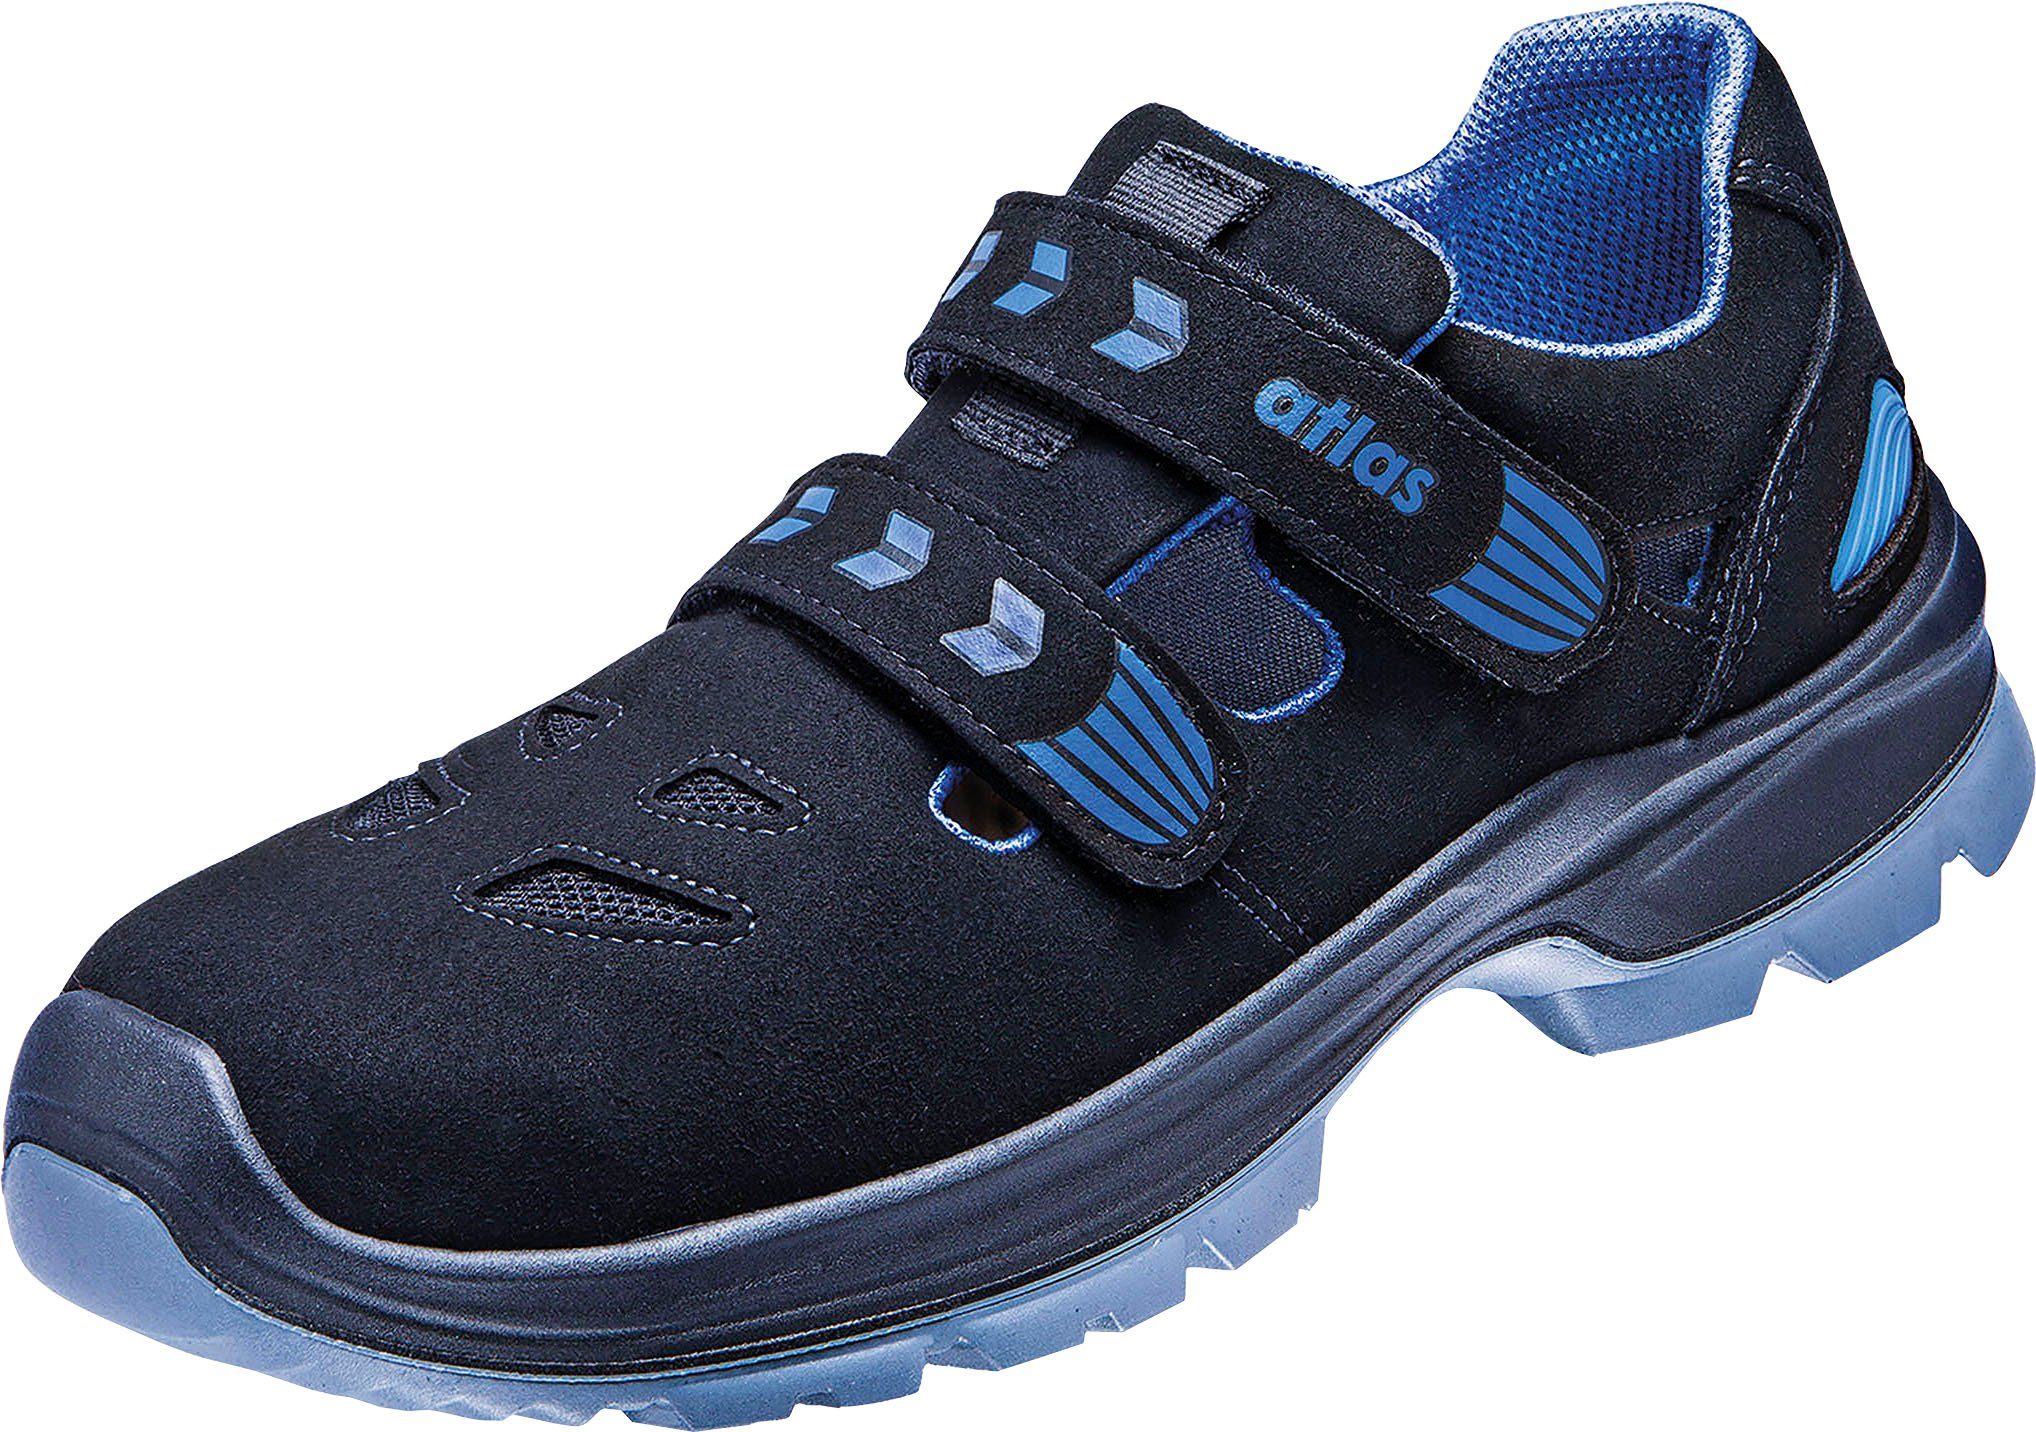 Atlas Schuhe Sicherheitsschuh Sicherheitsklasse S1 14, Ergo-Med 360 Sandale, Schuhweite